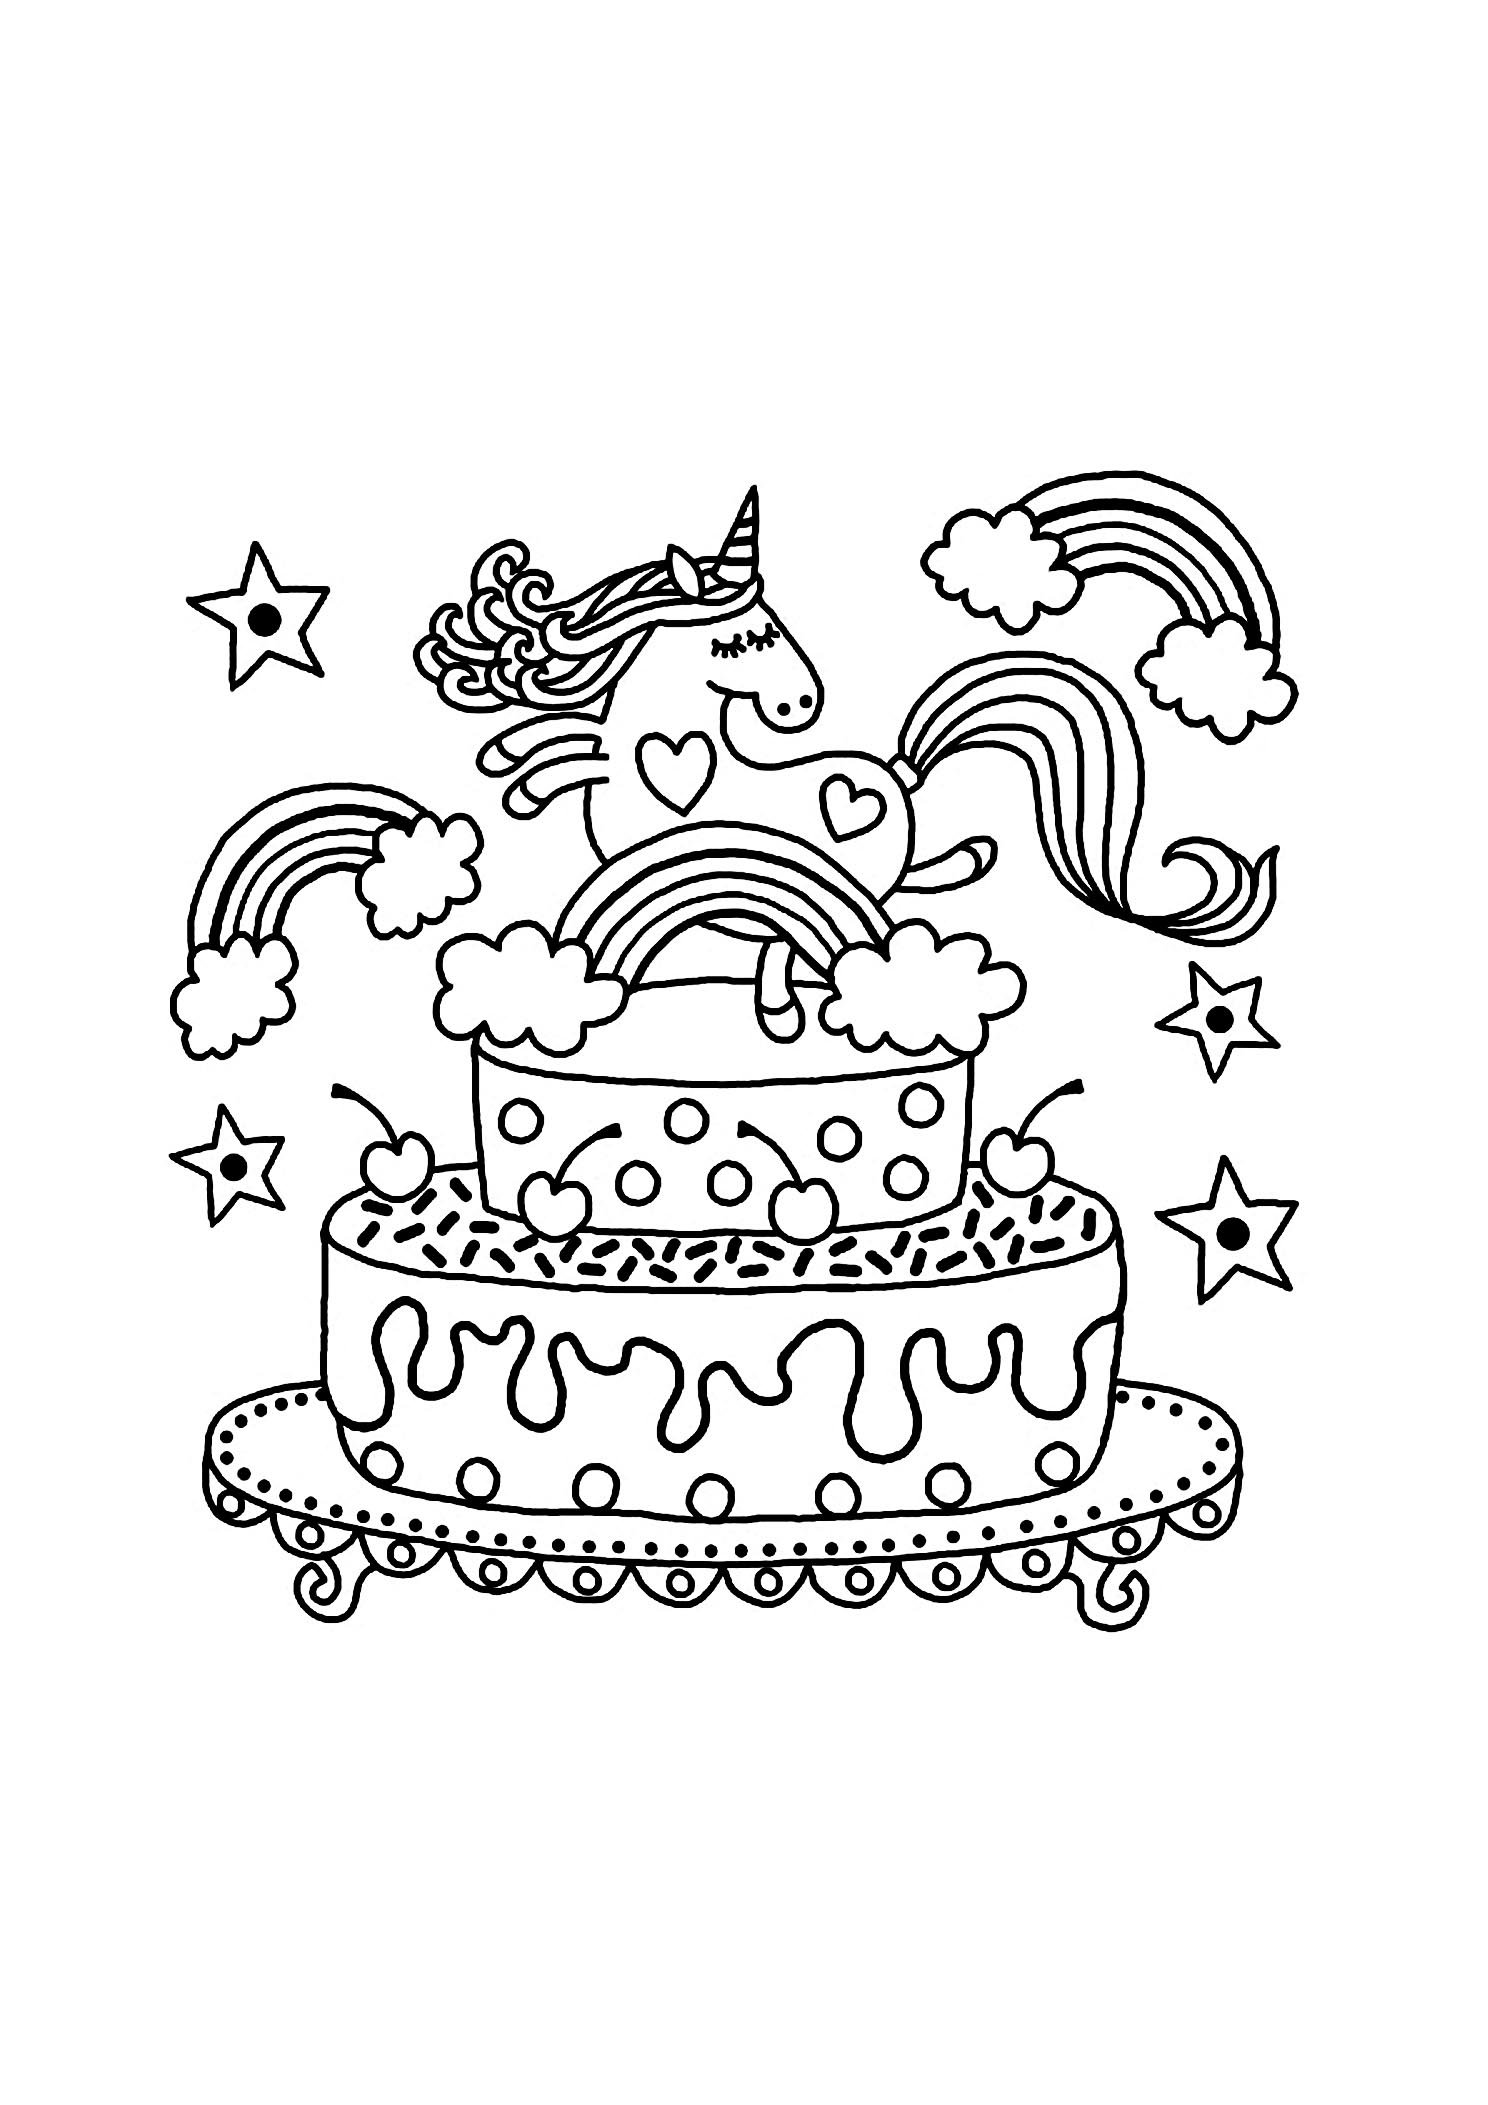 Единорог рисунок на торт распечатать